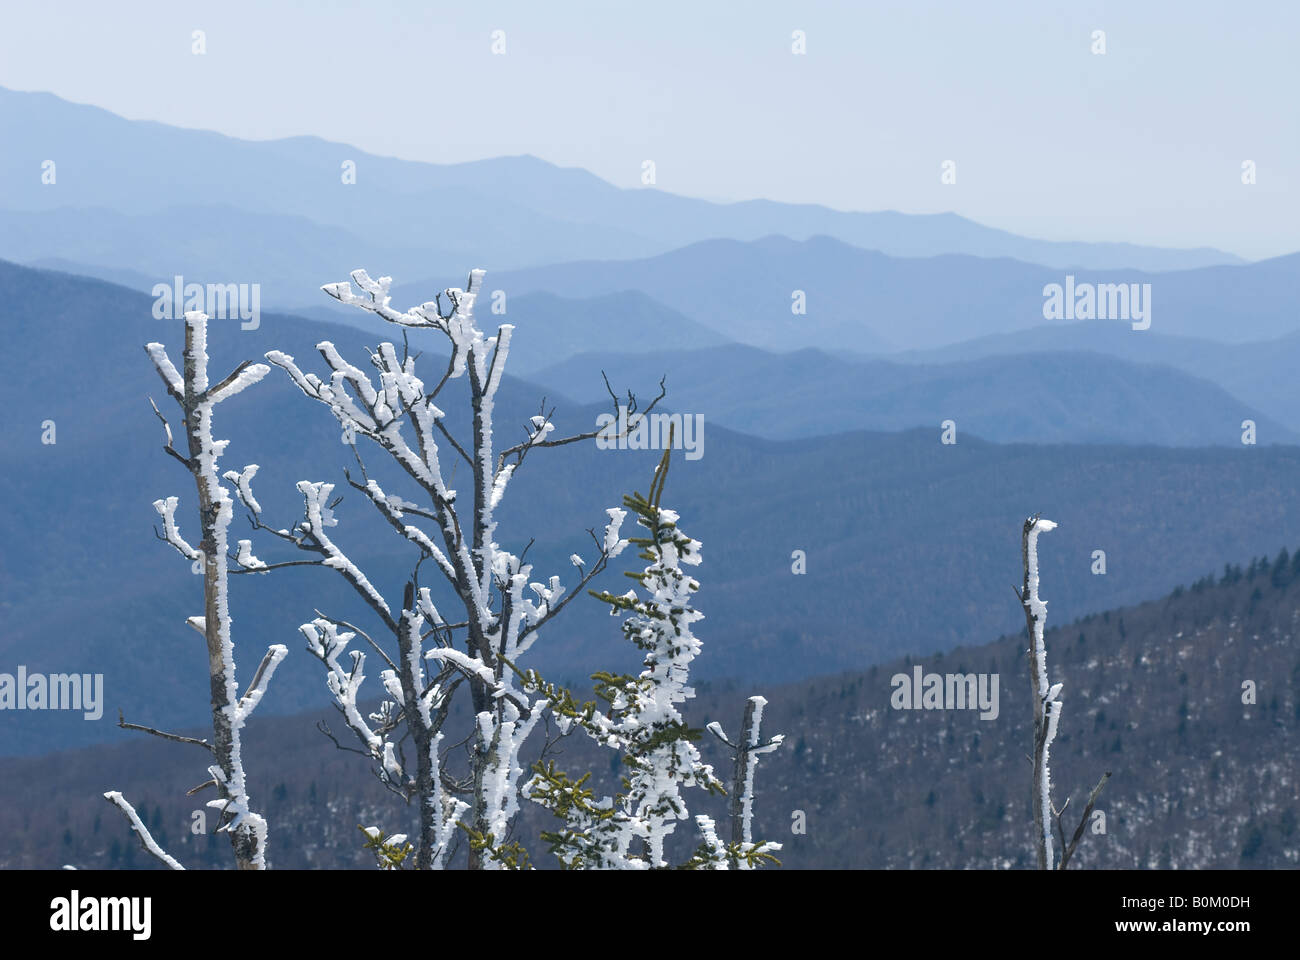 Rime di ghiaccio o brina su alberi con snowy Great Smoky Mountains stratificato in background. Foto Stock